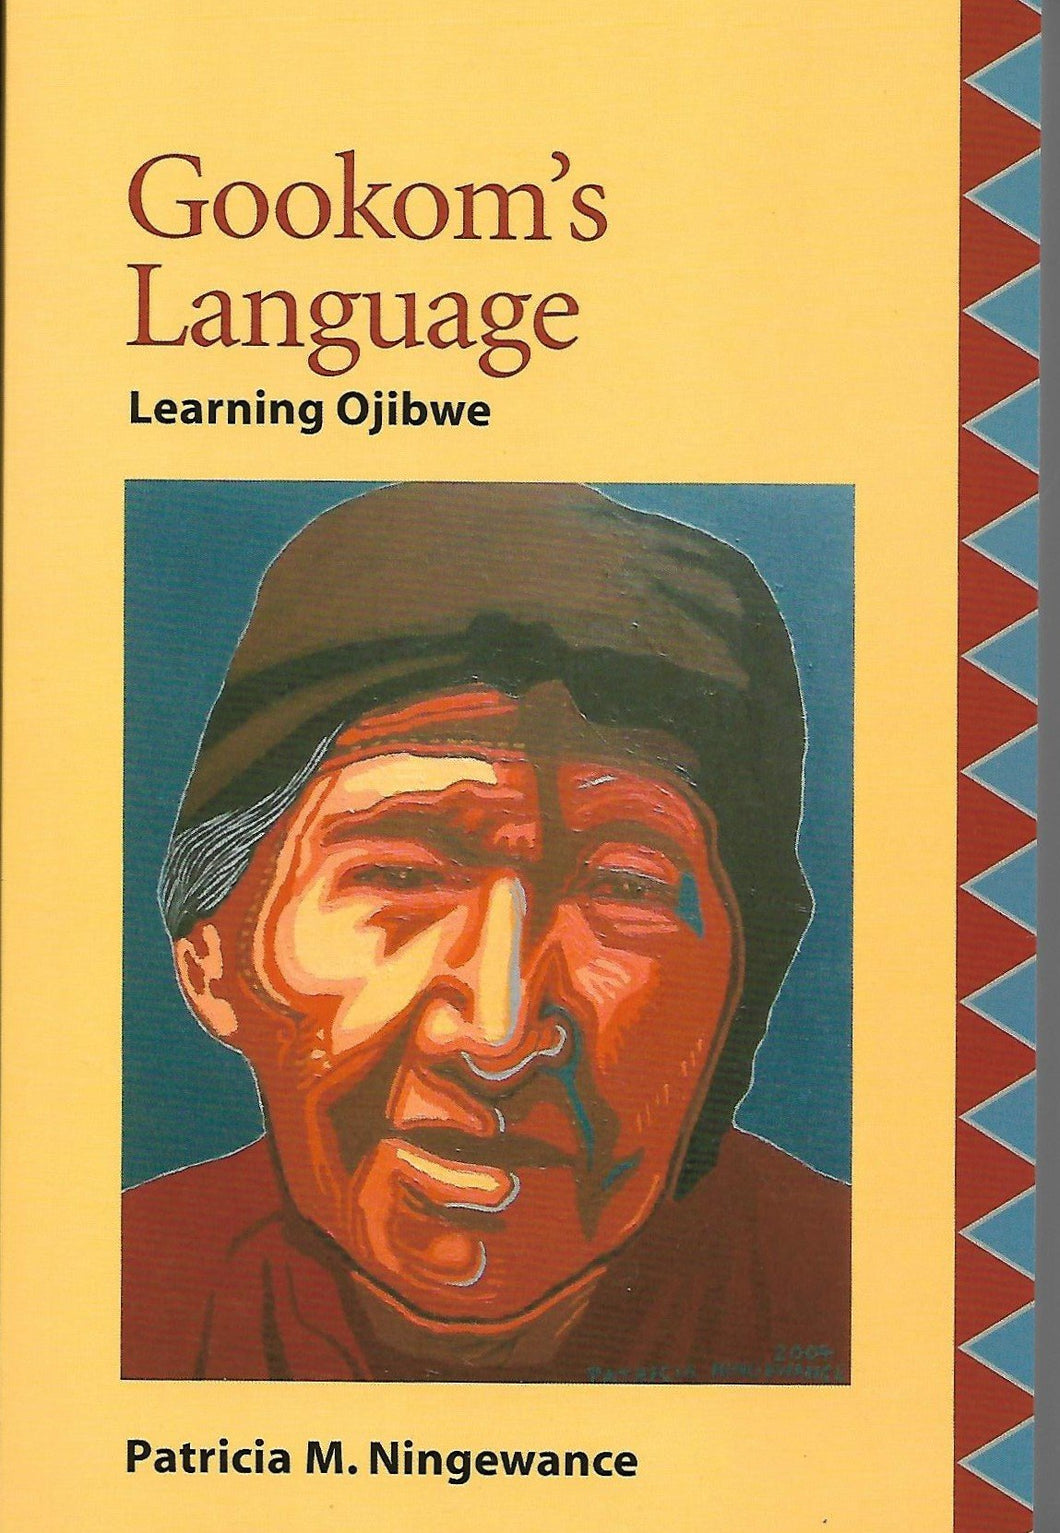 Gookum's Language [Patricia M. Ningewance]